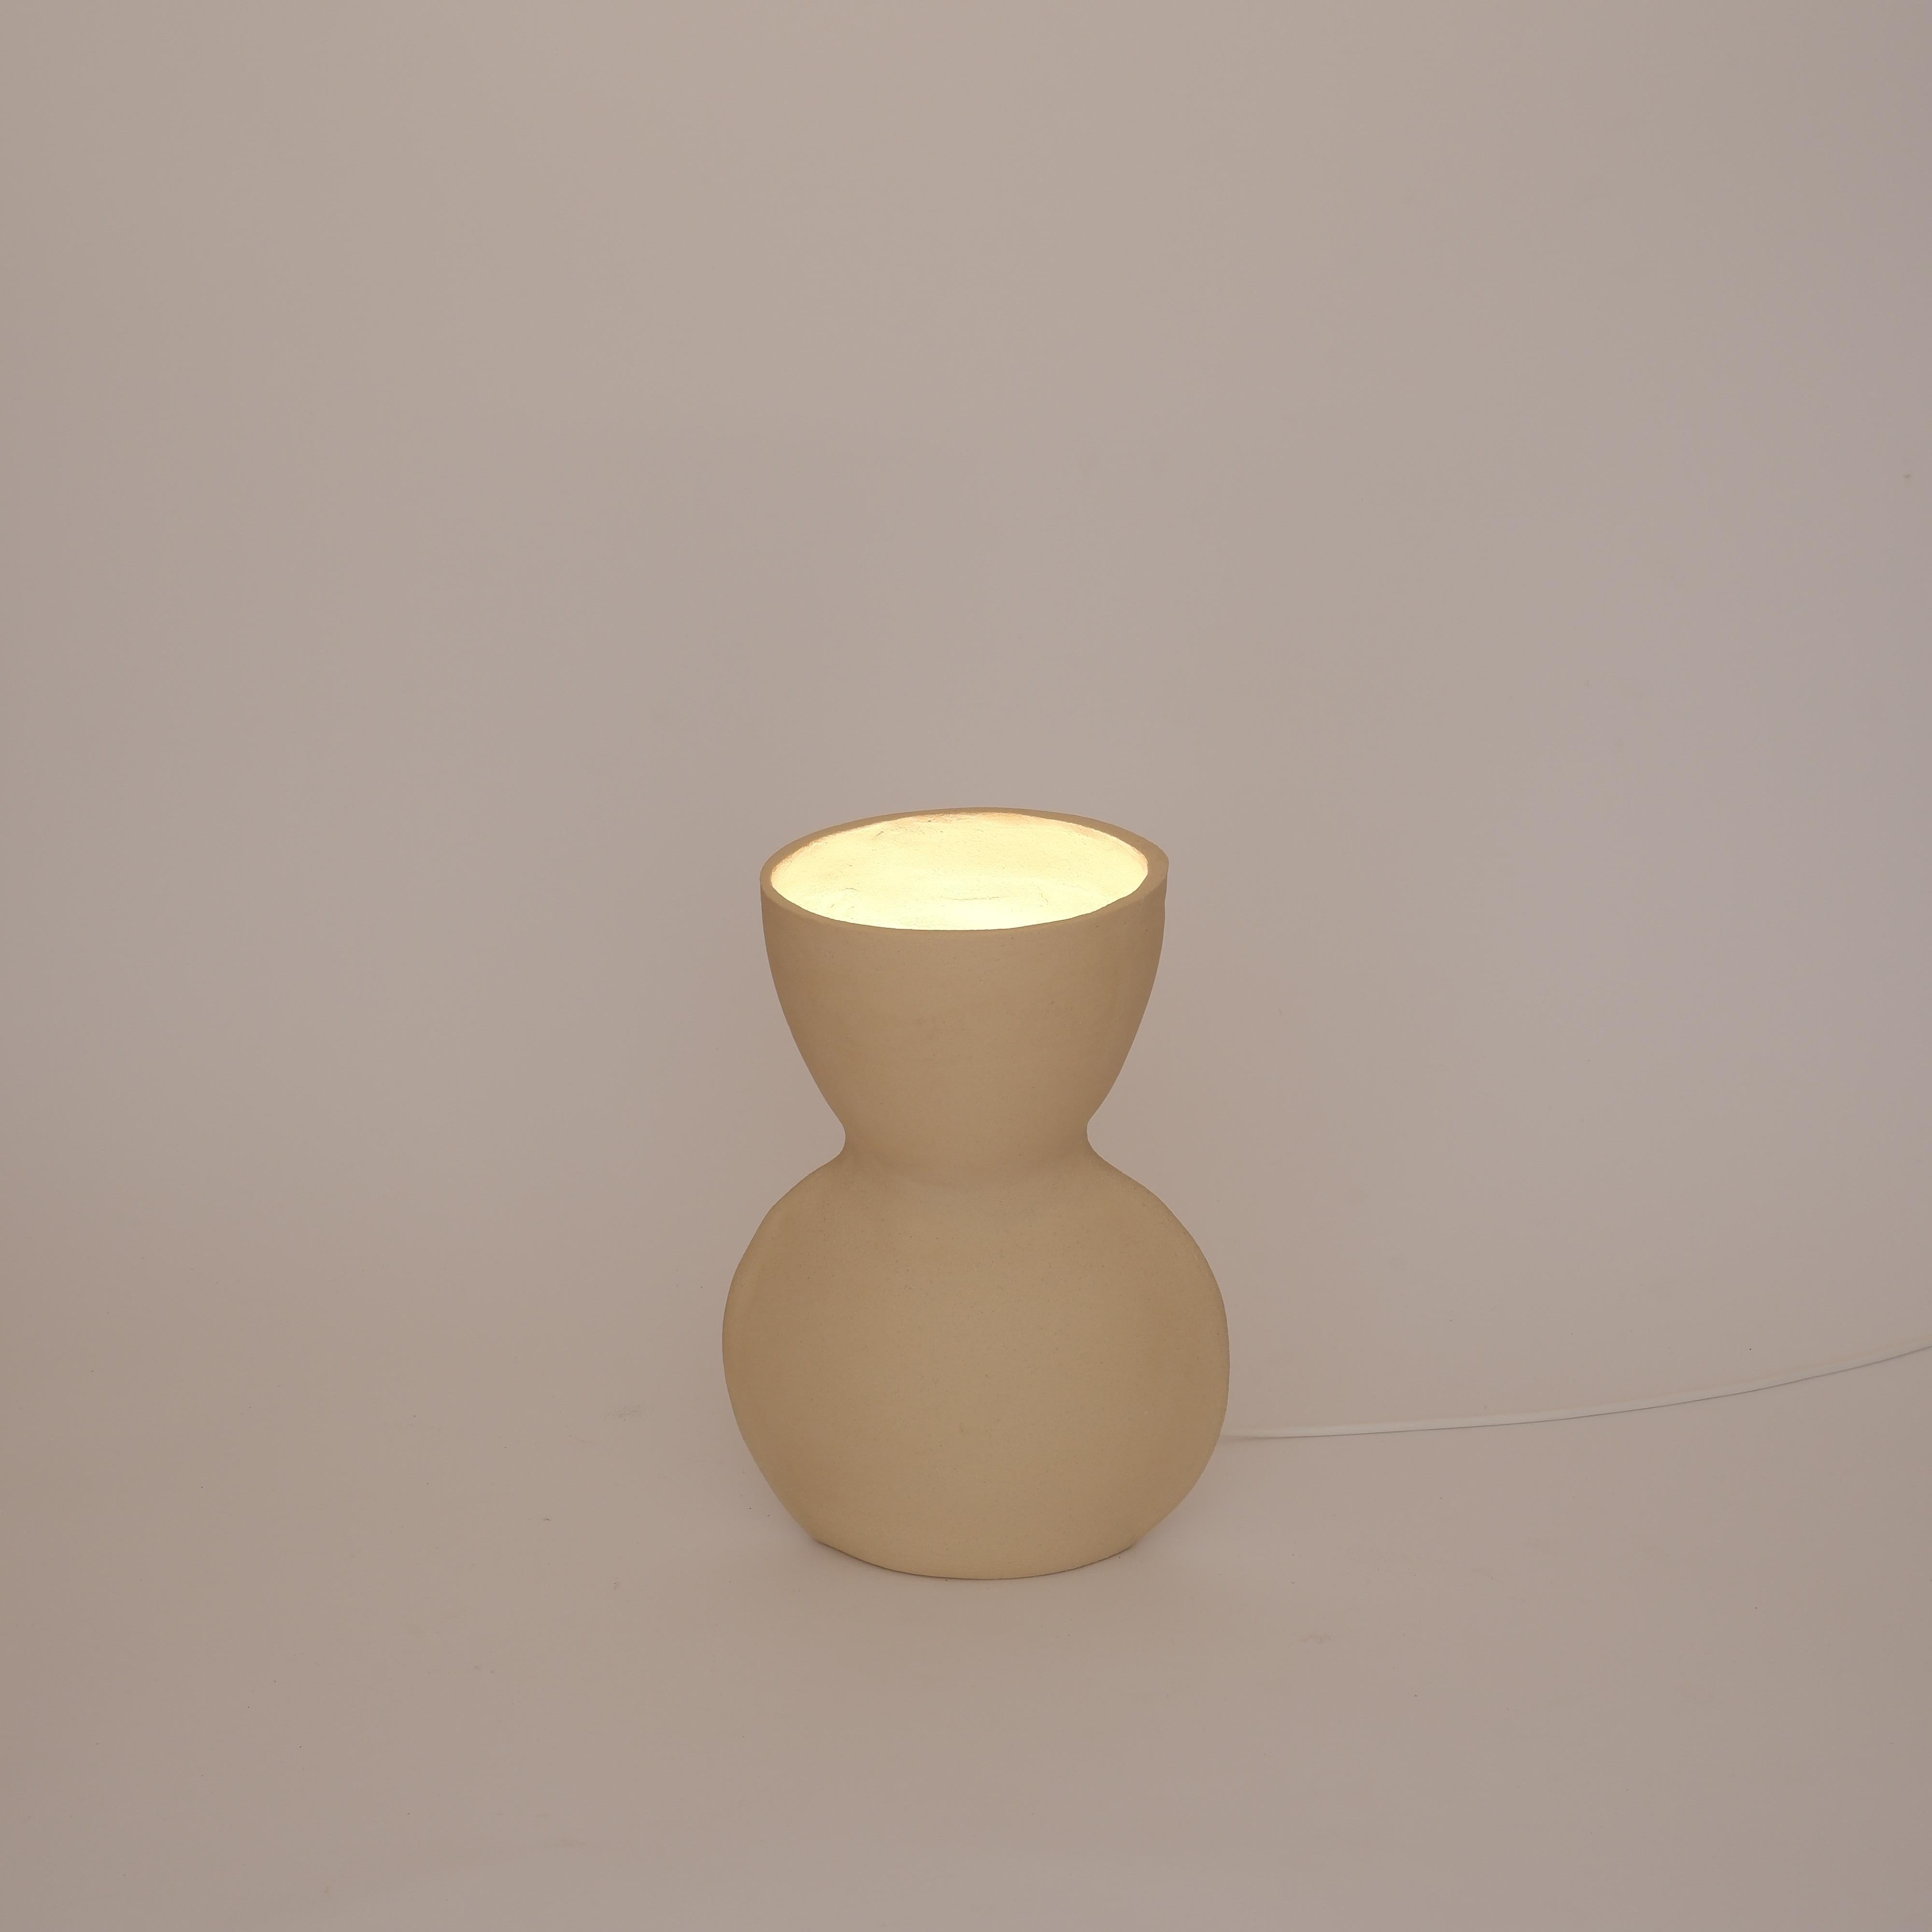 Kleine weiße Unira-Lampe von Ia Kutateladze
Einzigartig.
Abmessungen: T 14 x B 18 x H 25 cm.
MATERIALIEN: Lehm.

Jedes Stück ist ein Unikat, da es in freier Handarbeit hergestellt wird. Verschiedene Farbvarianten erhältlich: roher schwarzer Ton,